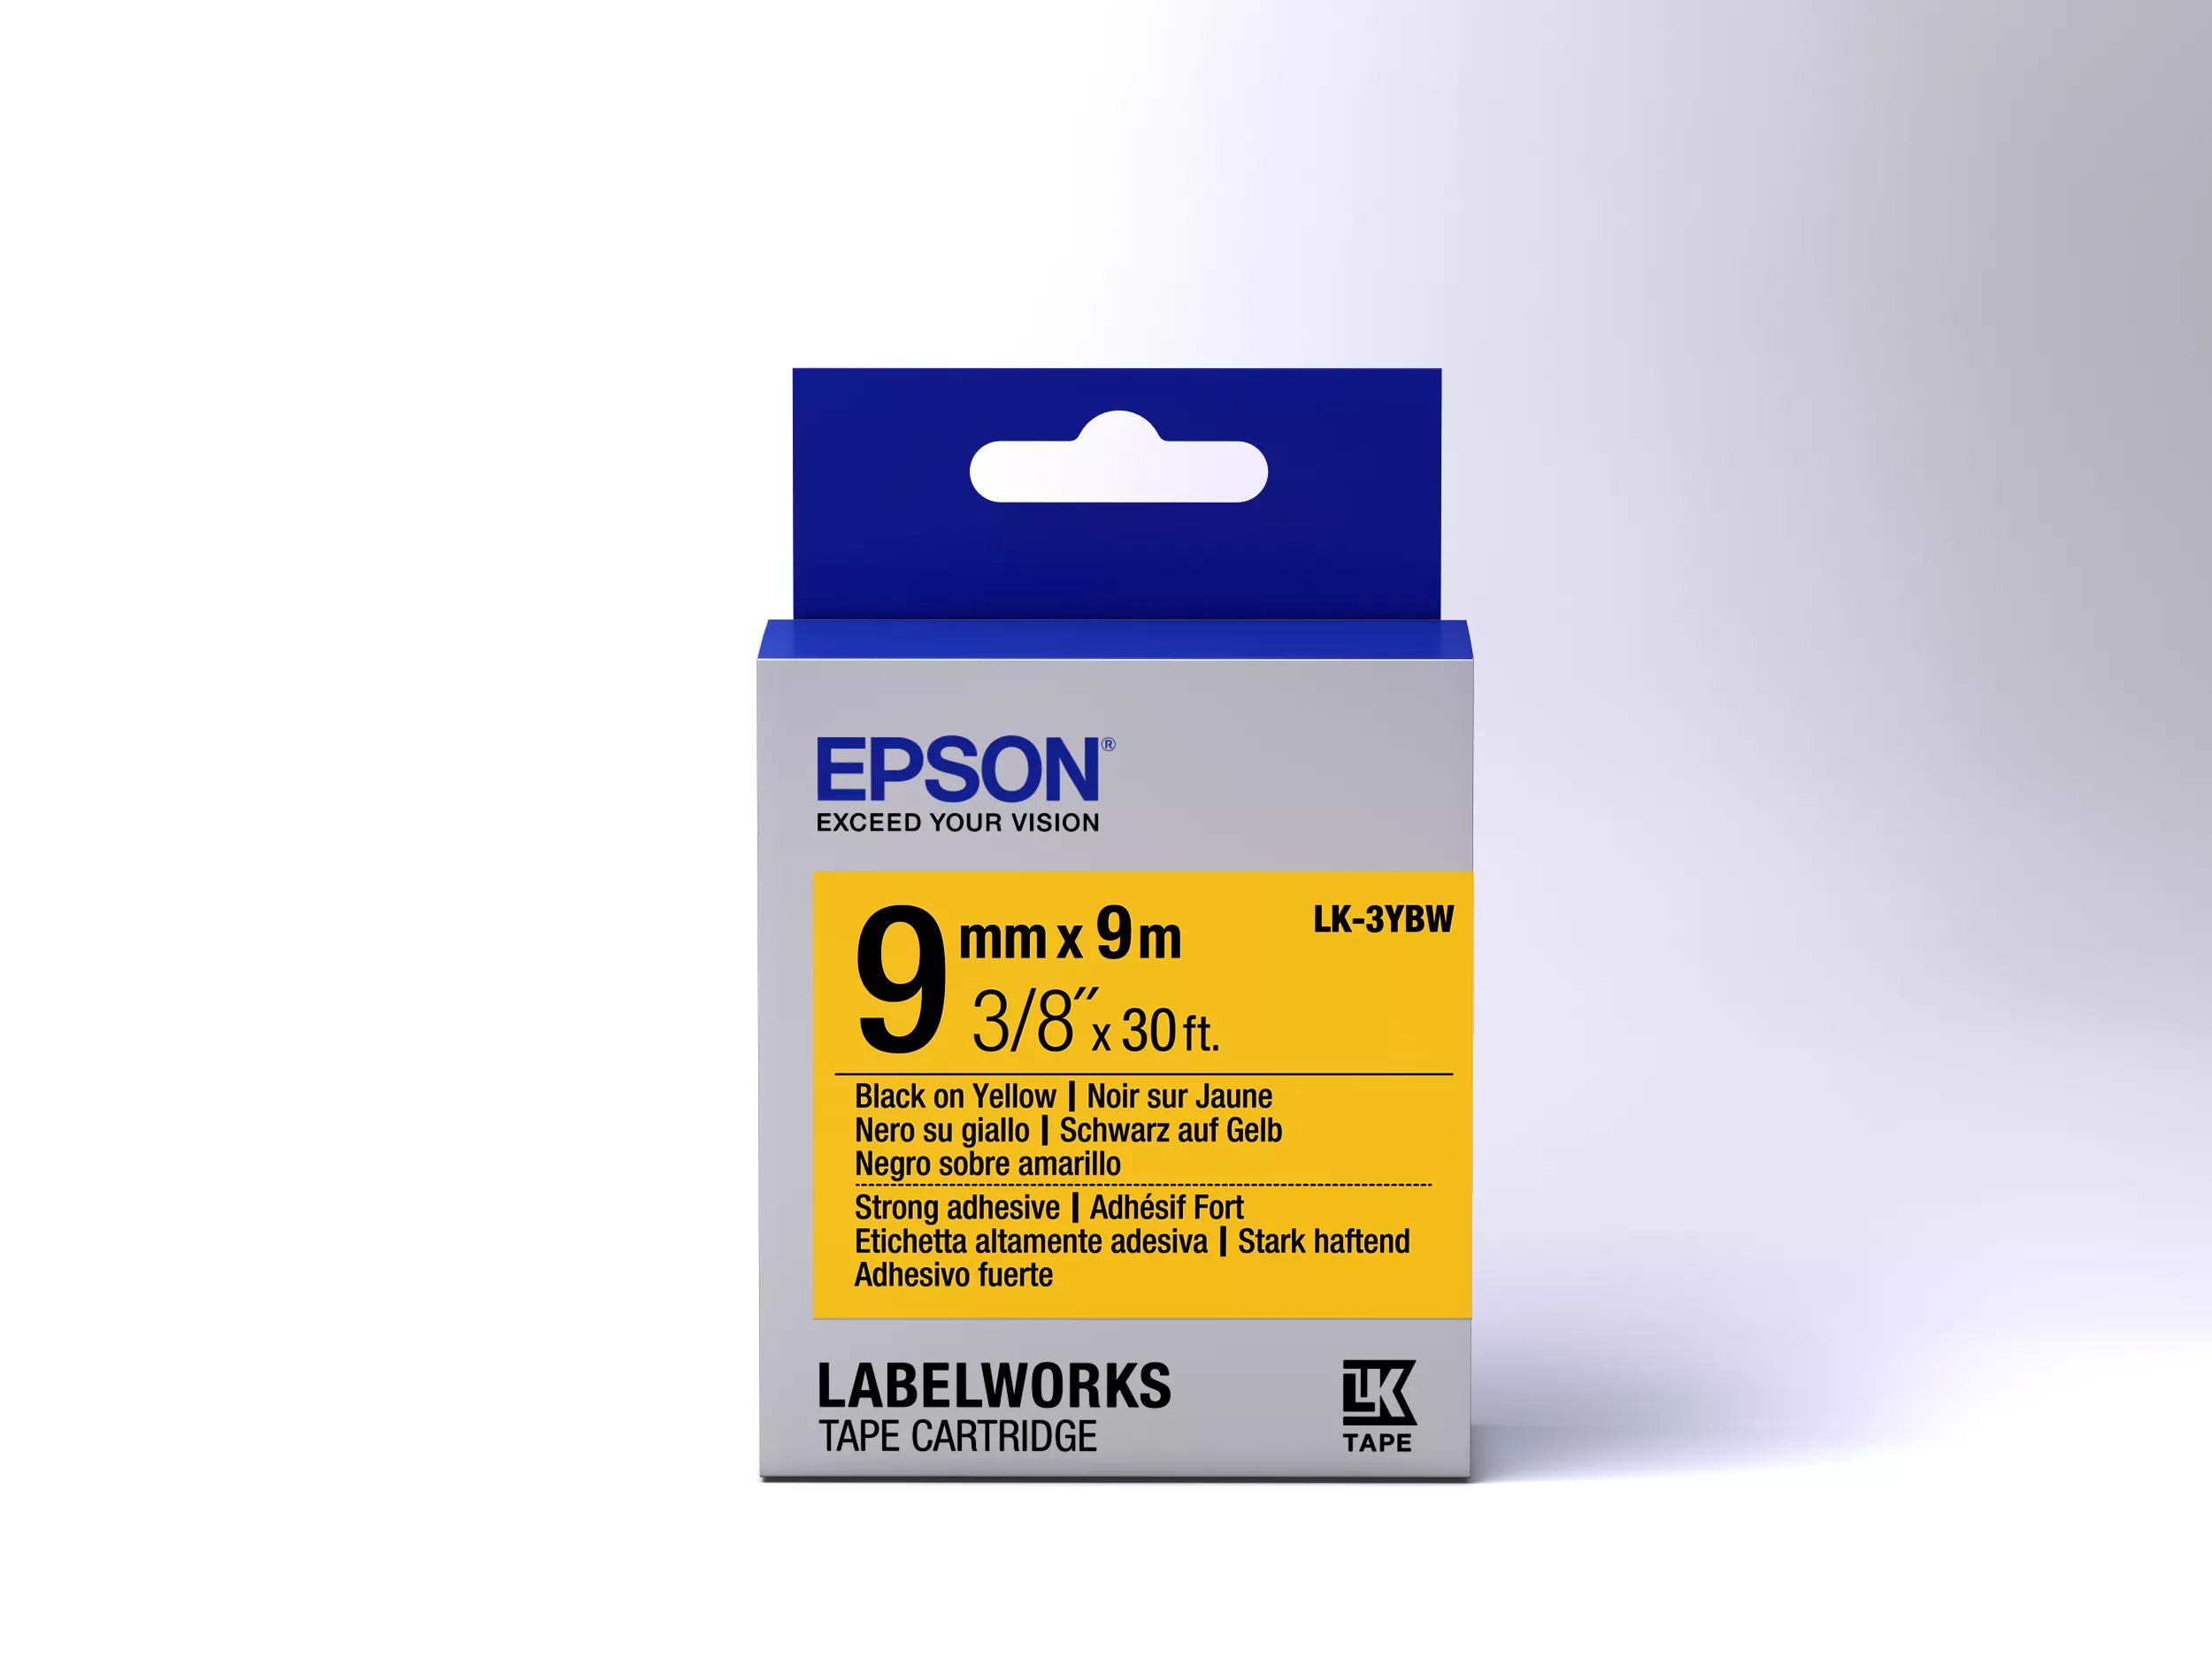 Vente Epson LK-3YBW - Adhésif Fort - Noir sur Epson au meilleur prix - visuel 2